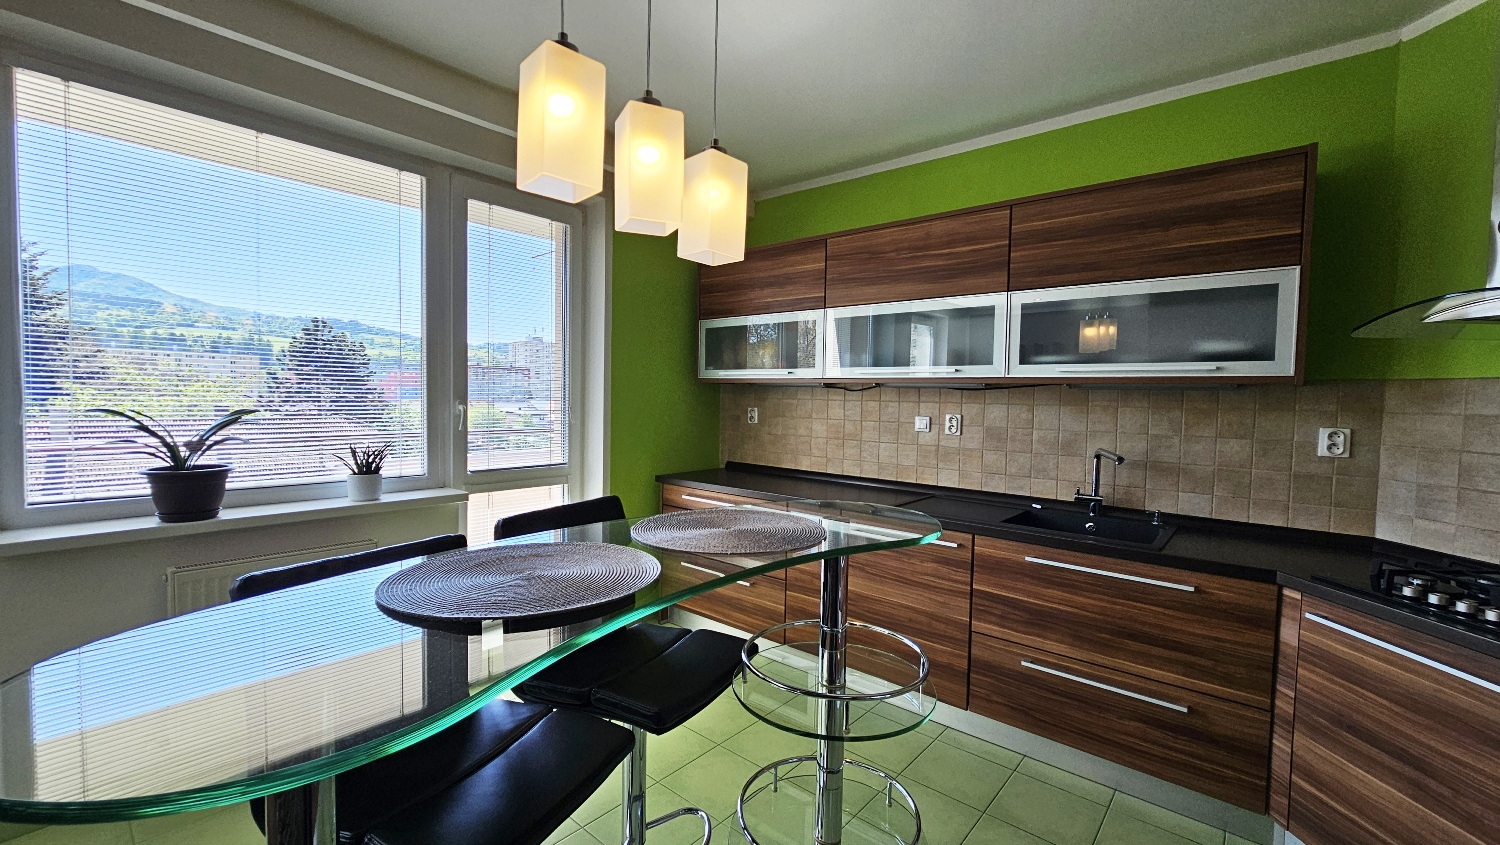 EXKLUZÍVNE! Veľký vkusný 3-izbový byt, balkón, výborná poloha, predaj, Kysucké Nové Mesto, Cena: 159.000 €